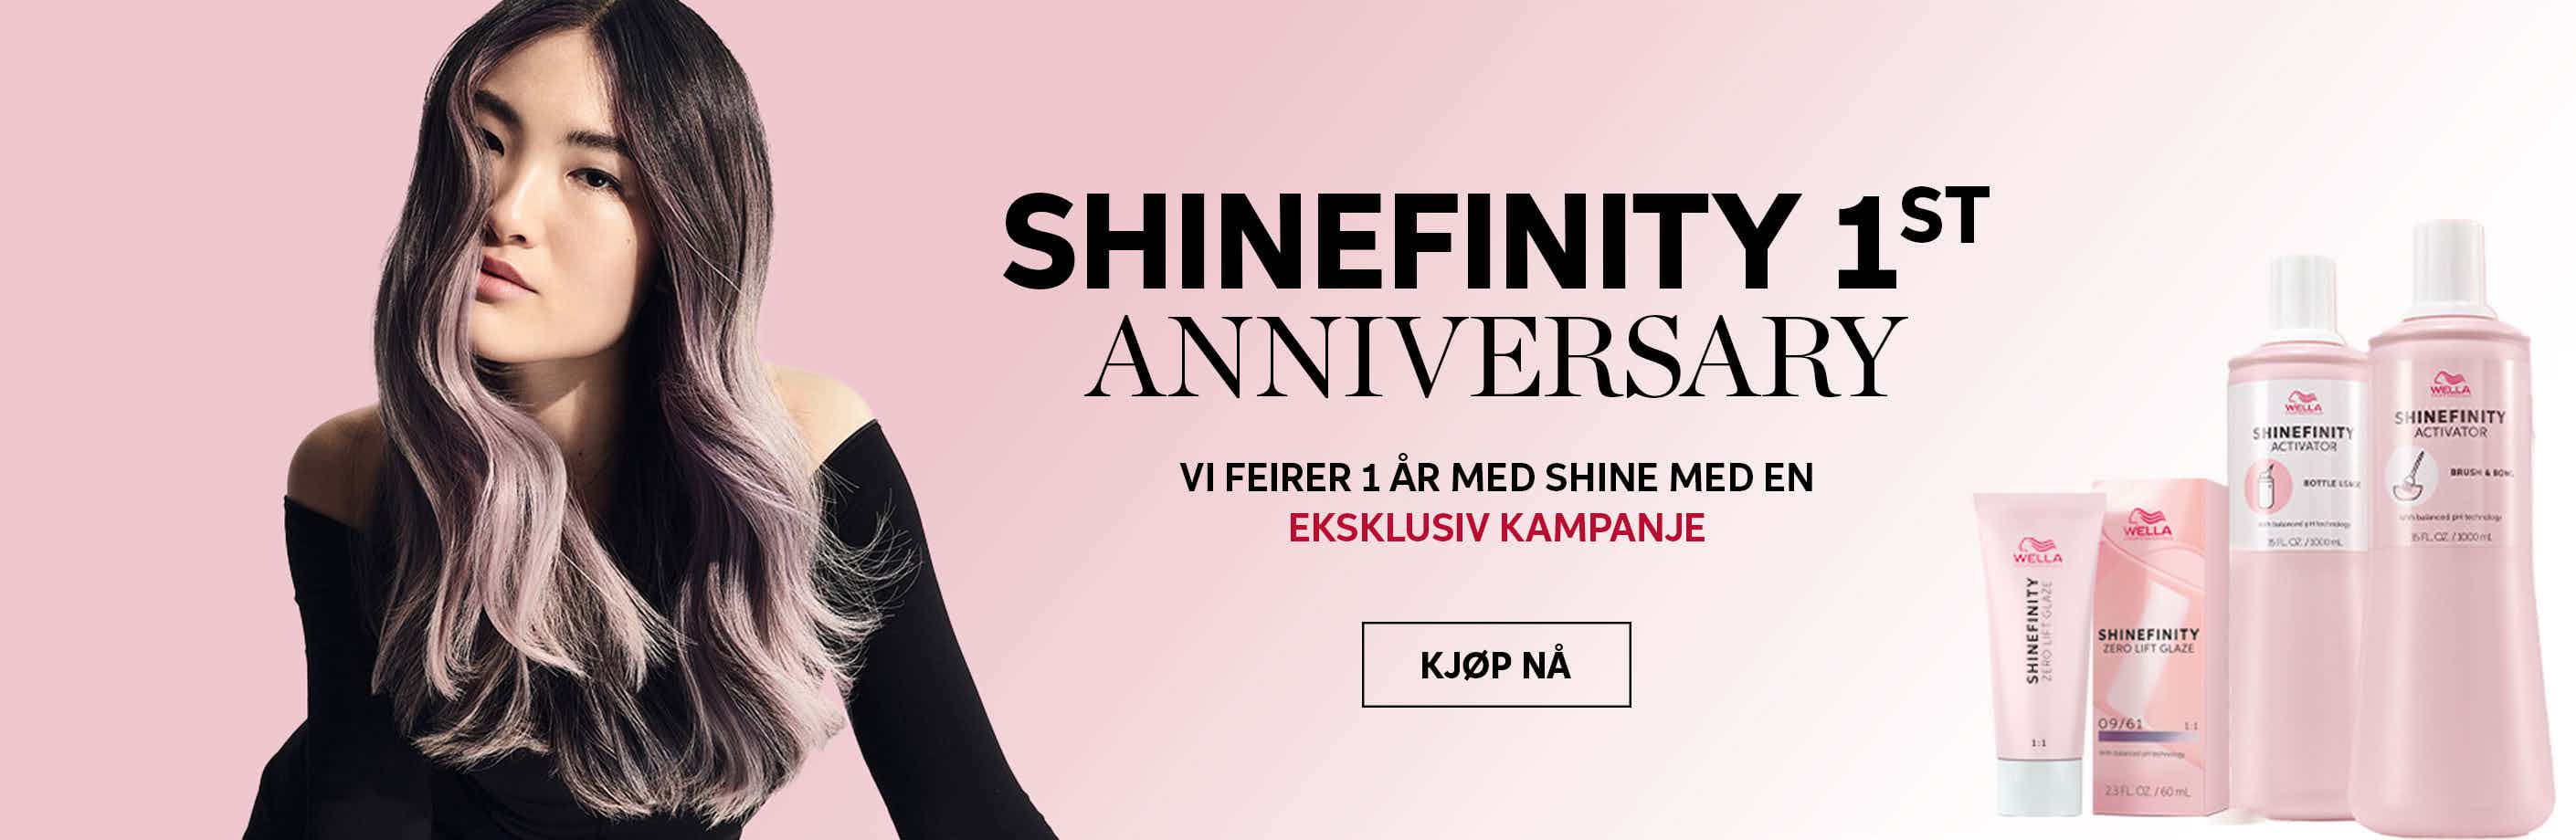 Shinefinity 1st Anniversary